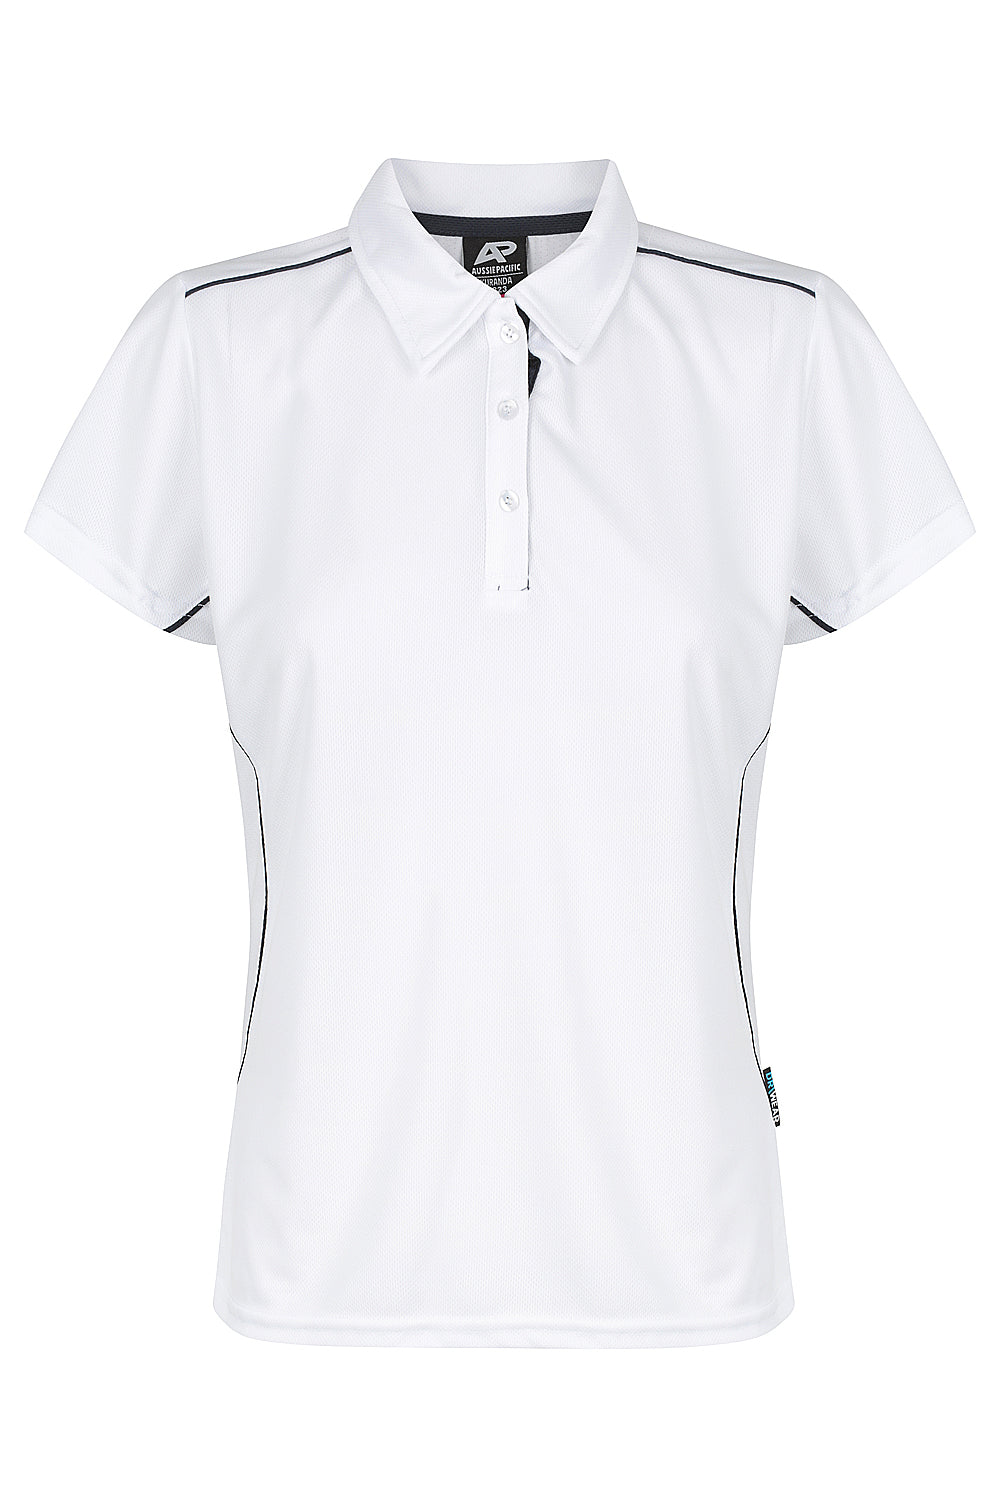 Custom Ladies Kurana Work Shirts - White/Navy